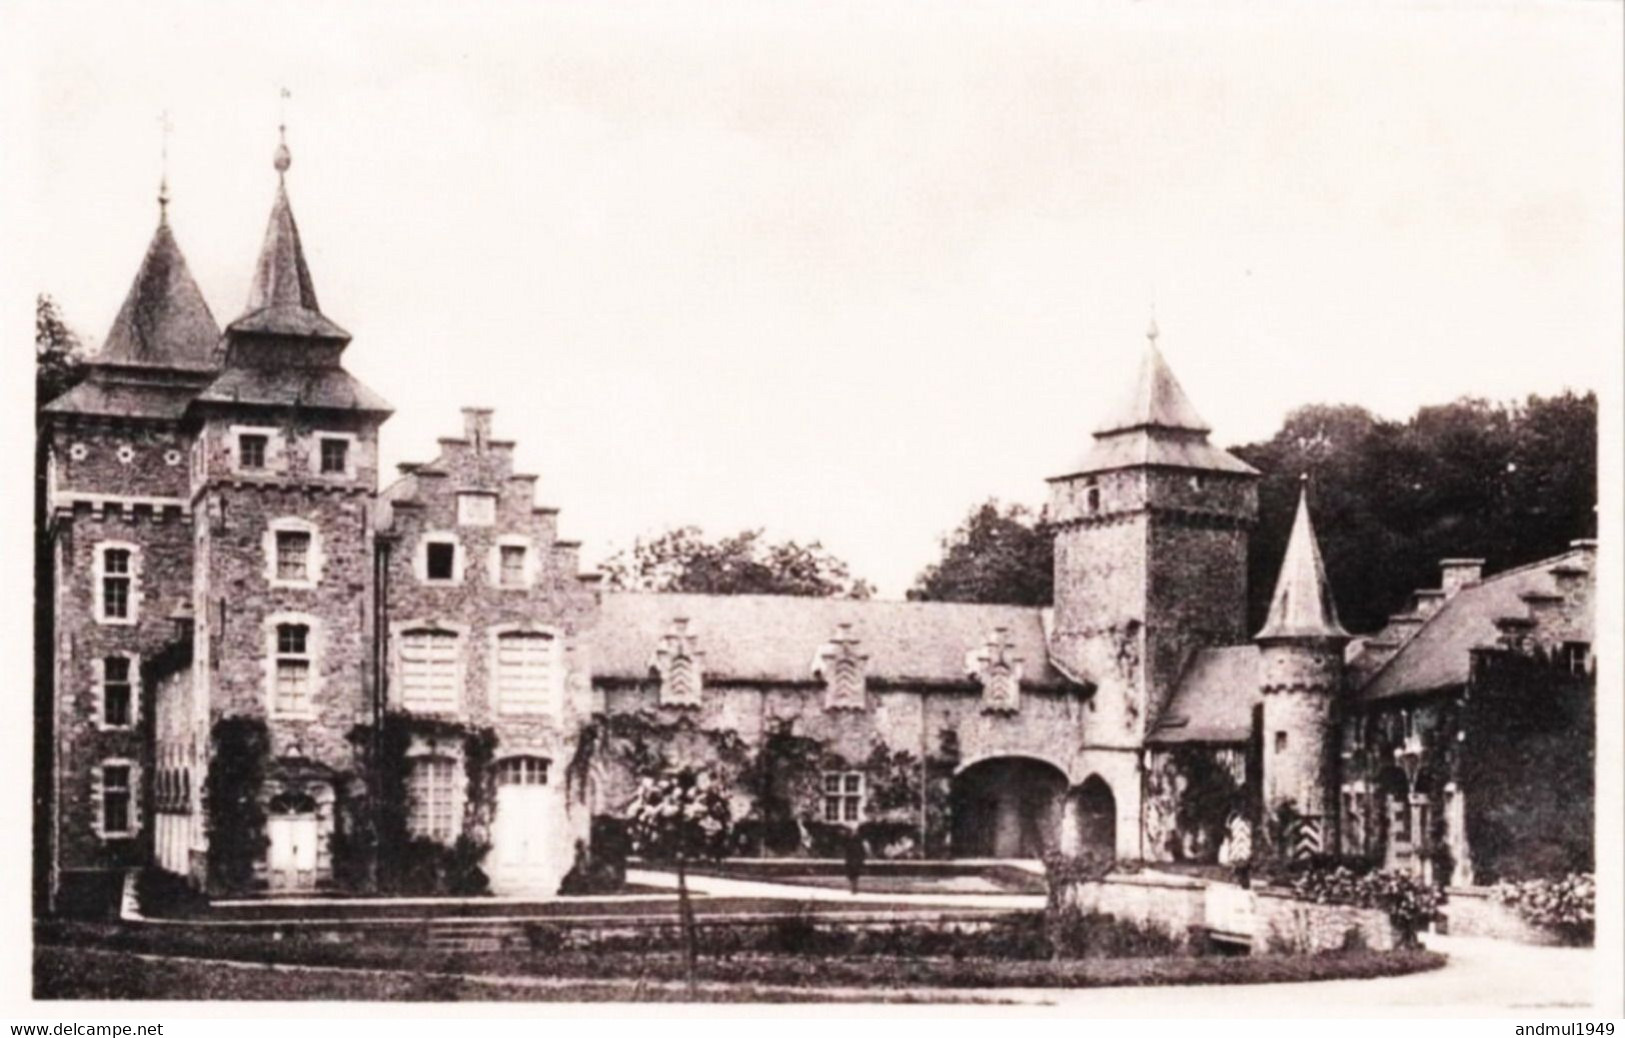 FELUY - Château De La Rocq - Edition : Luypaerts, Feluy - N'a Pas Circulé - Seneffe